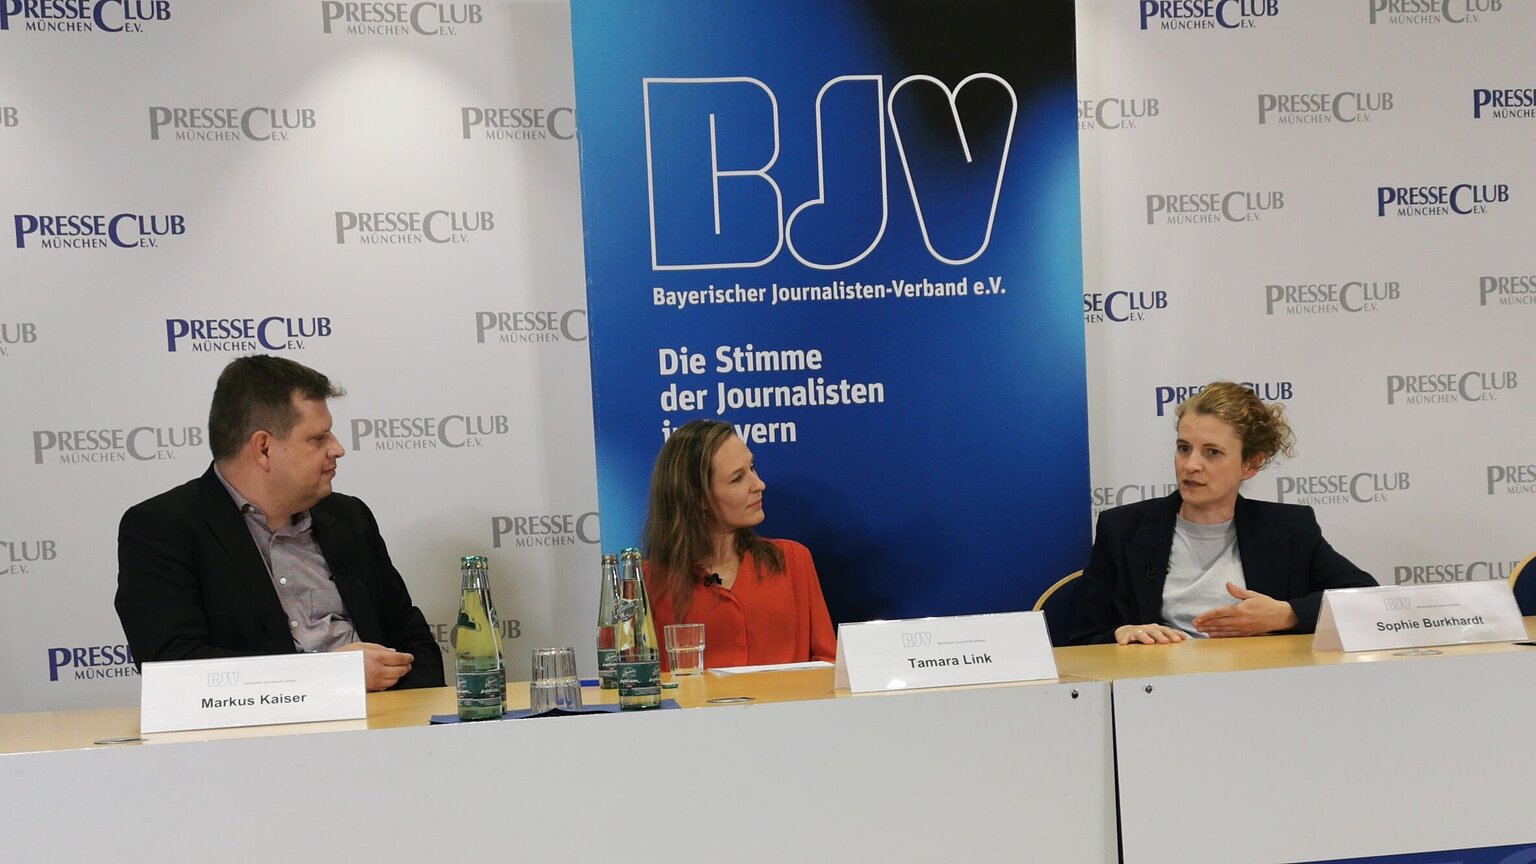  – Vor der Wahl diskutierten Markus Kaiser und Sophie Burkhard mit Tamara Link zum Thema "KI im Rundfunk".